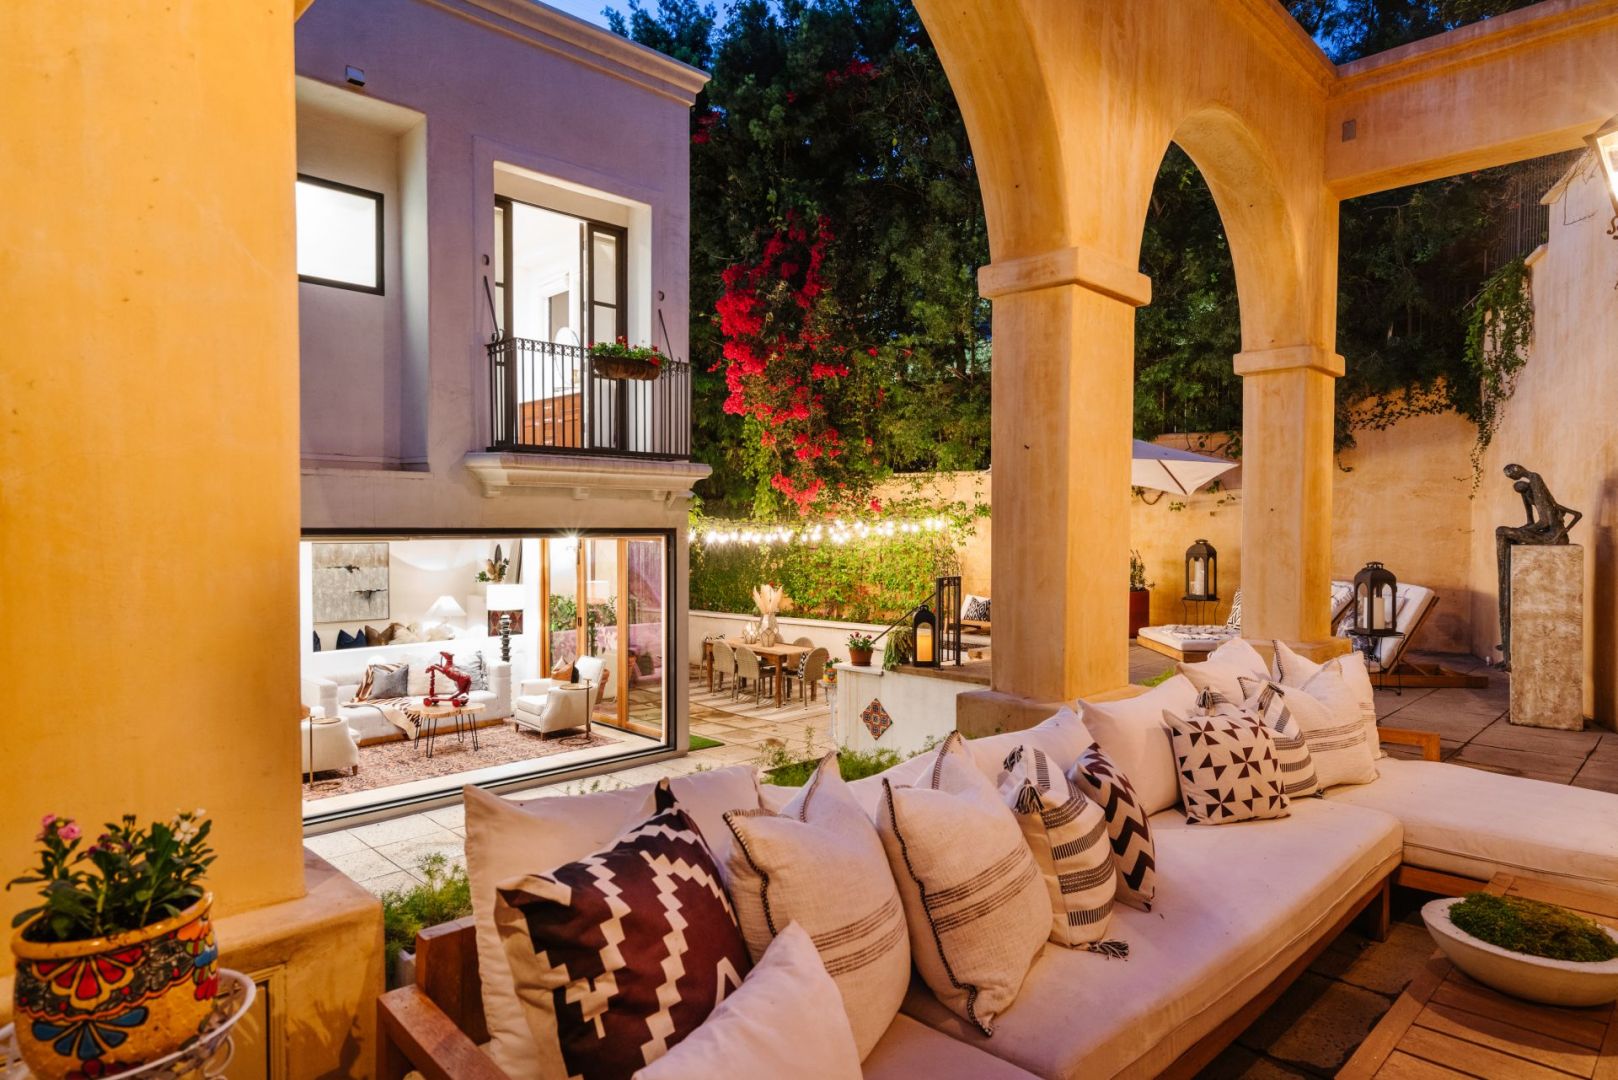 Tak wygląda dom w Hollywood, który należy do piosenkarki Camilli Cabello. Zdjęcia: Neue Focus, www.compass.com. Źródło: TopTenRealEstateDeals.com